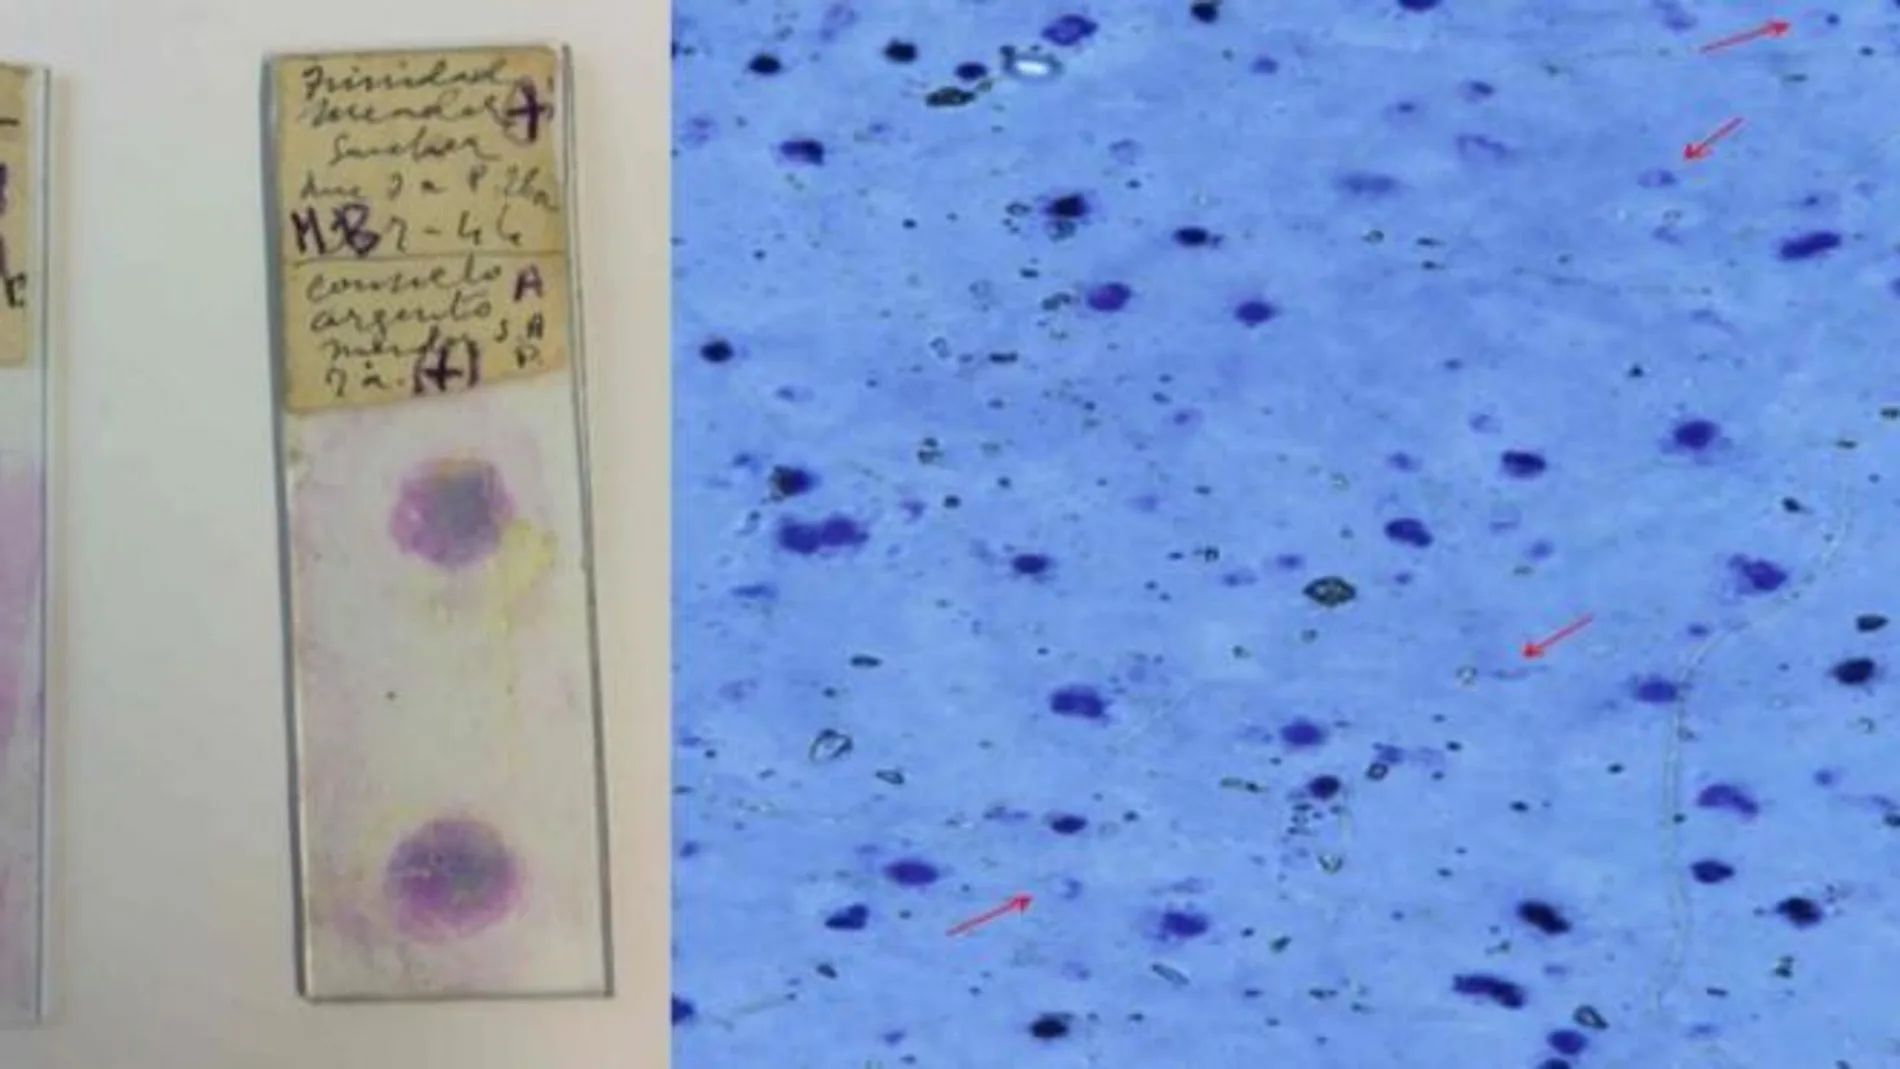 Izquierda: dos de las preparaciones antiguas empleadas en el estudio. Derecha: bajo el microscopio, a 400 aumentos, pueden distinguirse algunos parásitos de la malaria